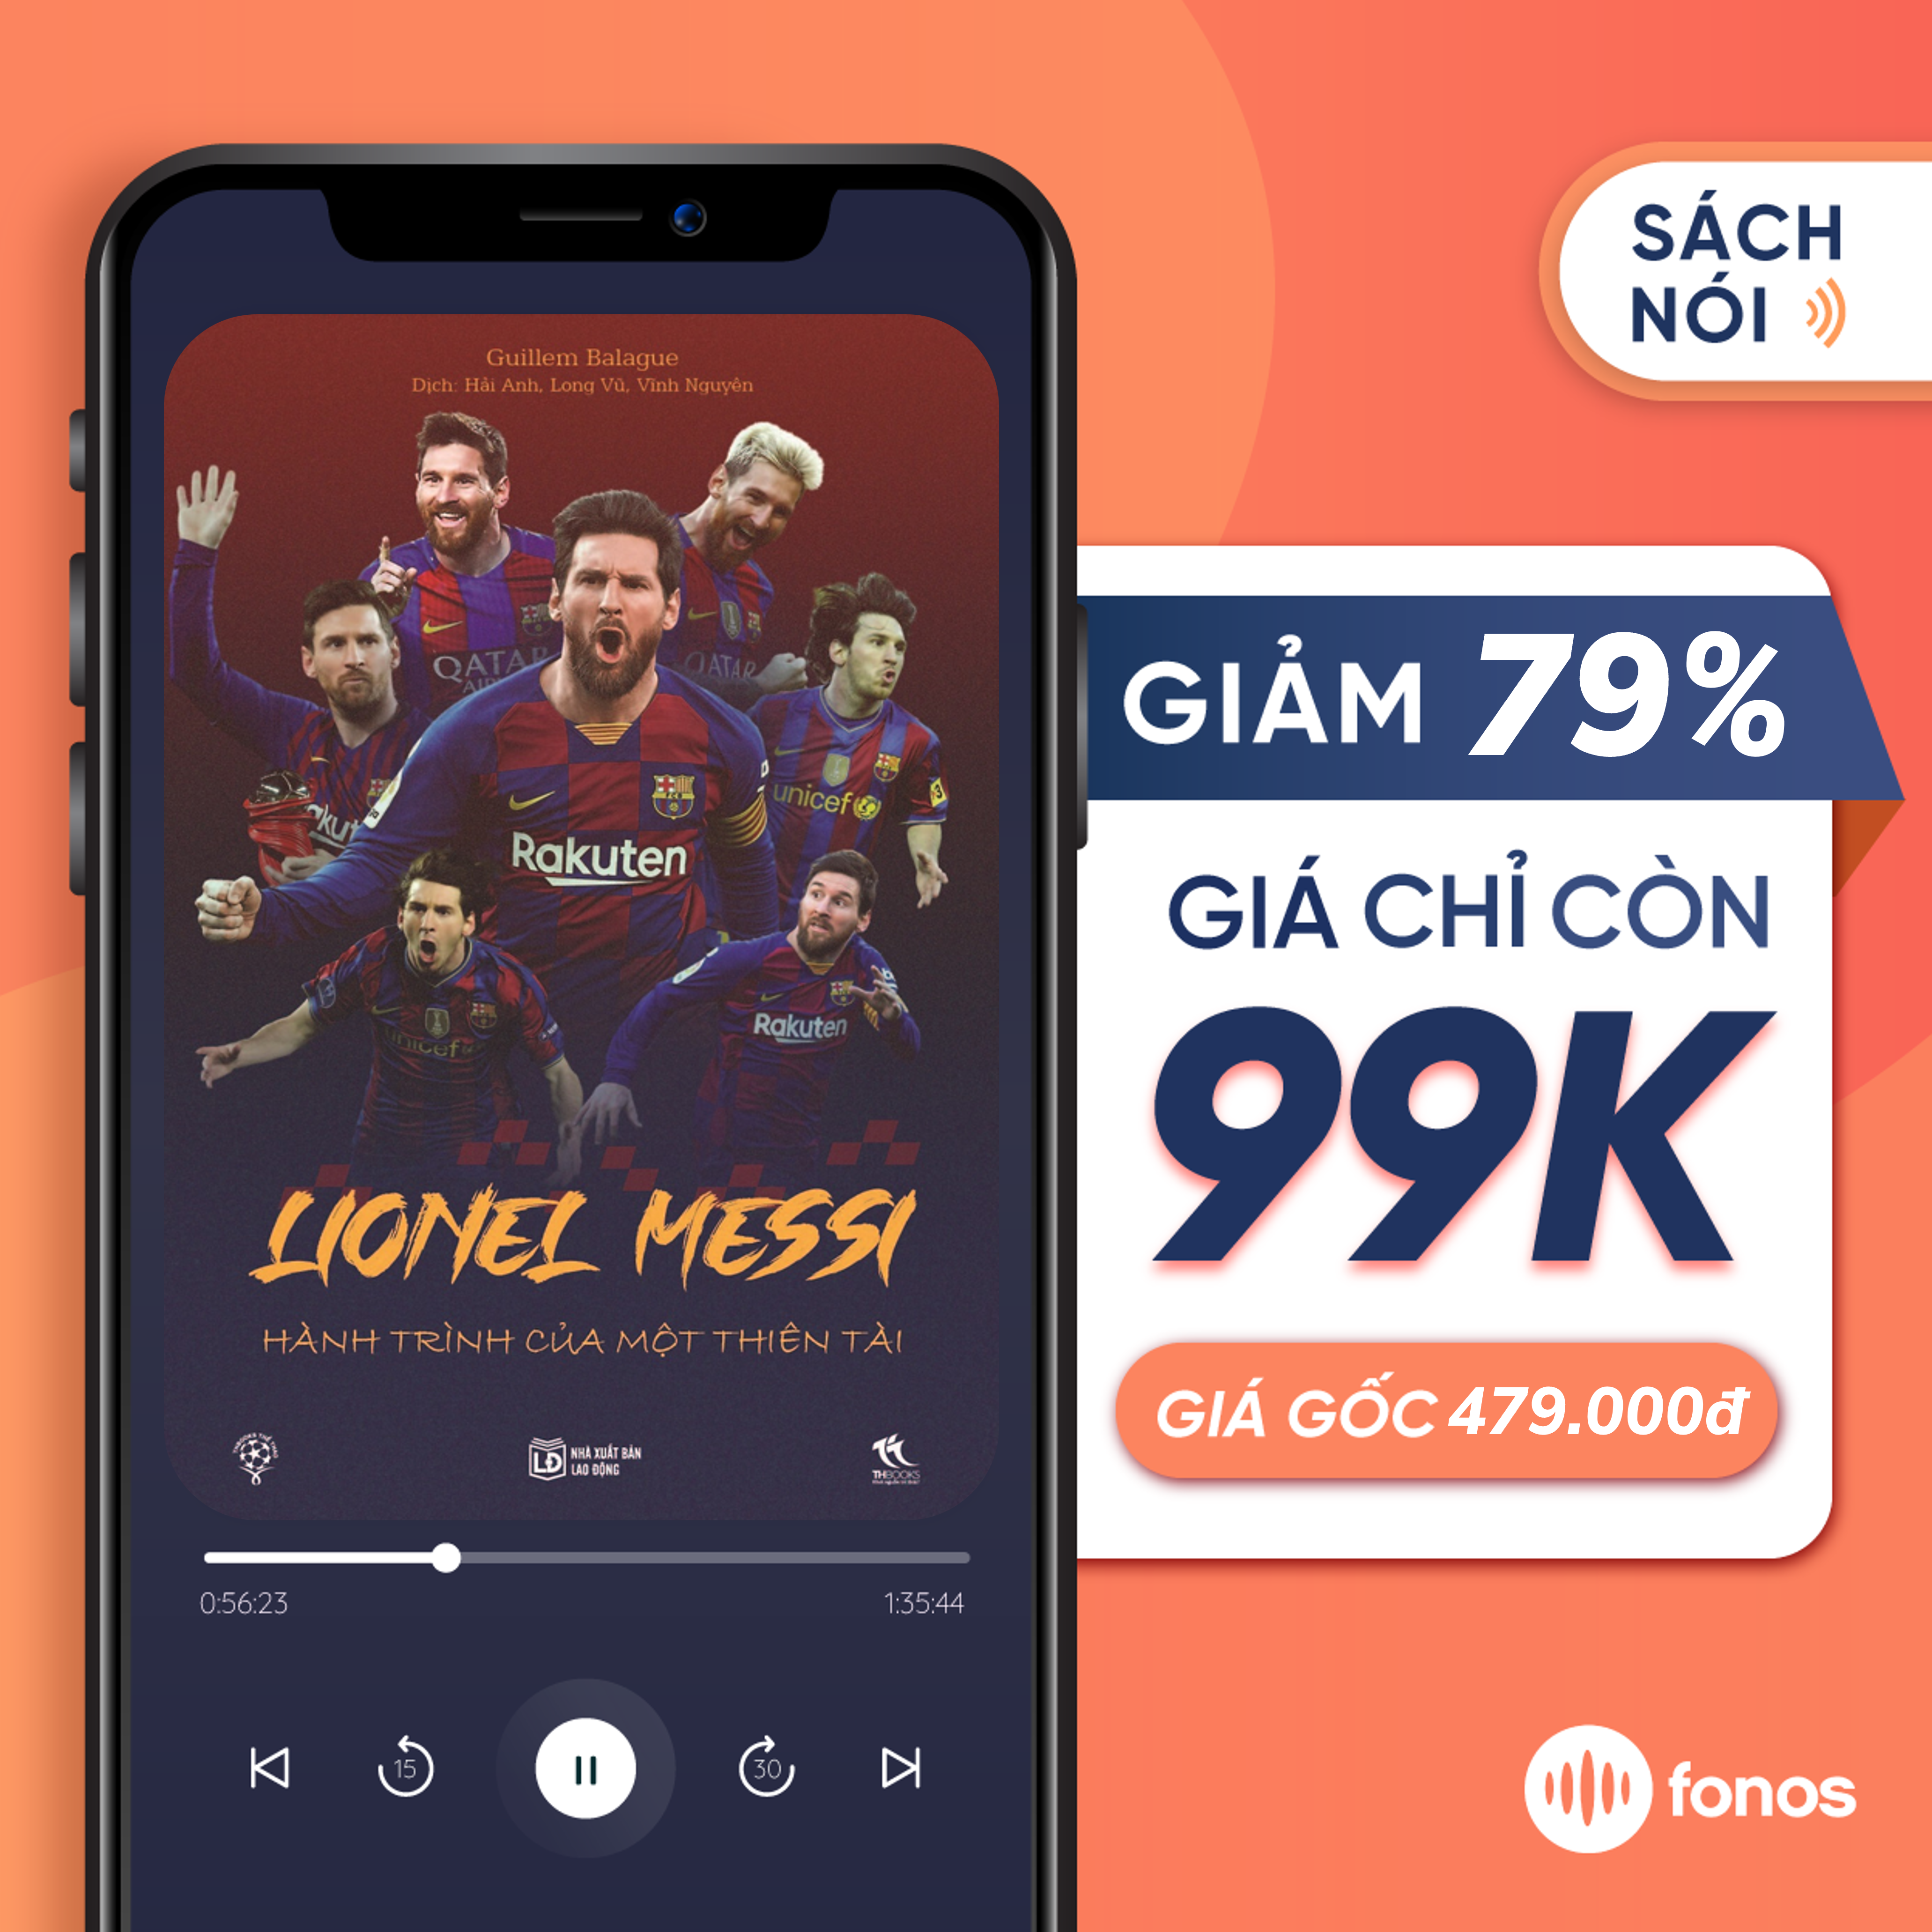 Hình ảnh [e-Voucher] Sách nói Fonos: Lionel Messi - Hành Trình Của Thiên Tài